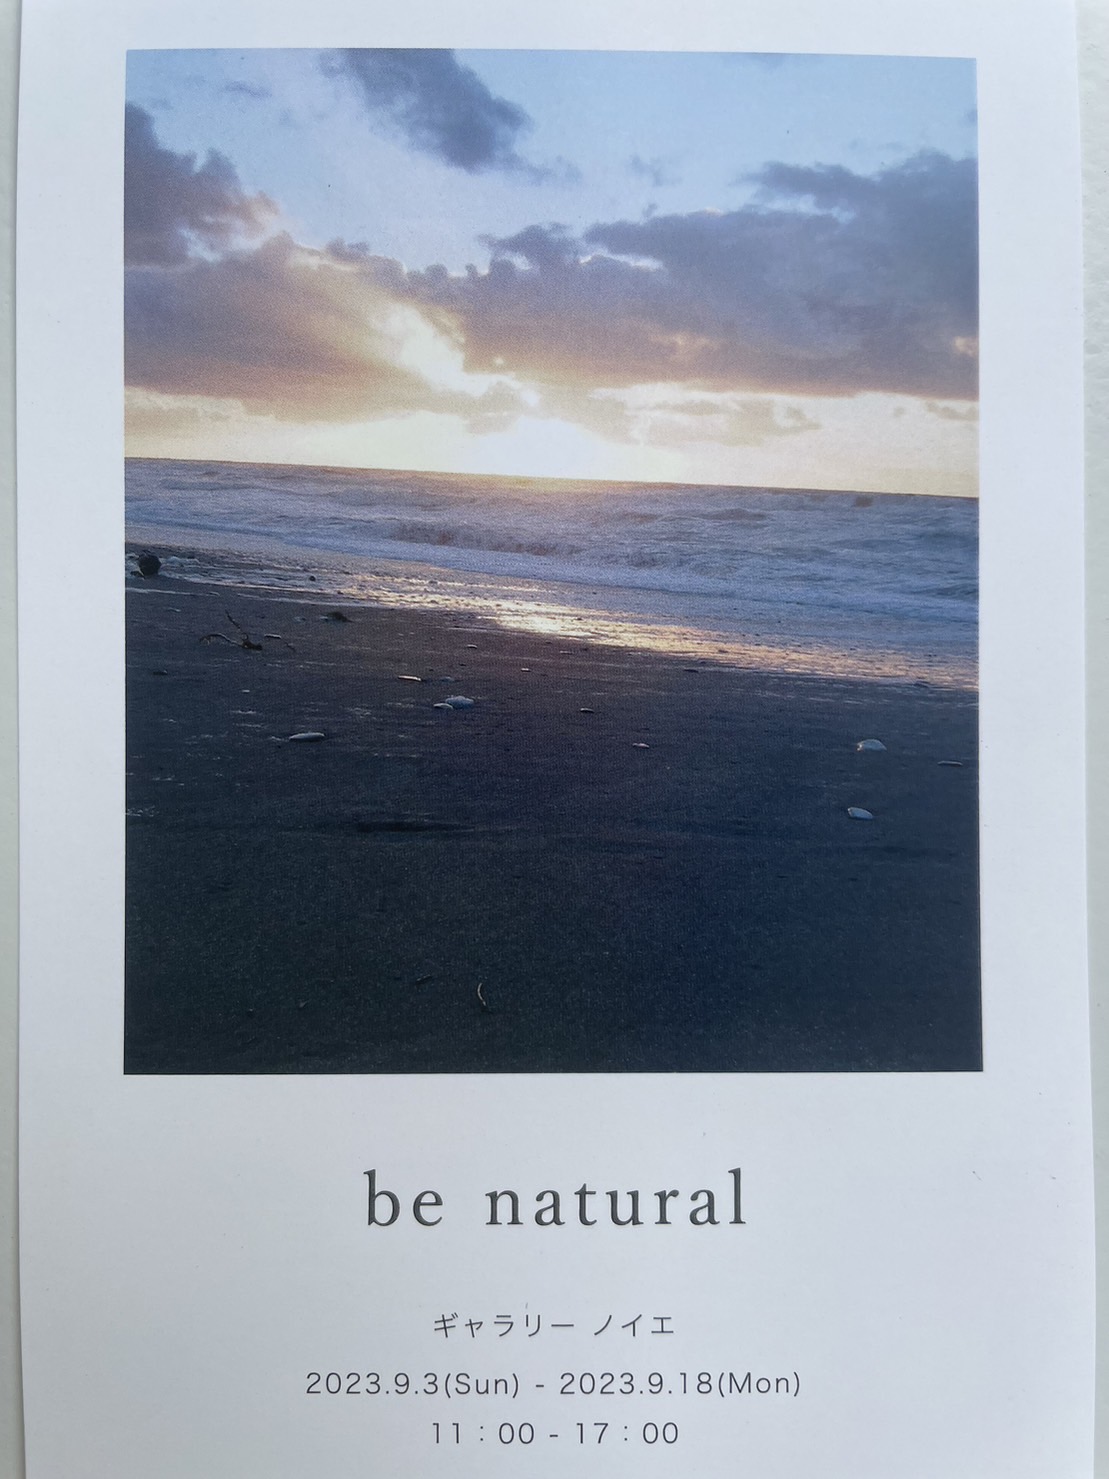 石田恵美作品展『be natural』開催中